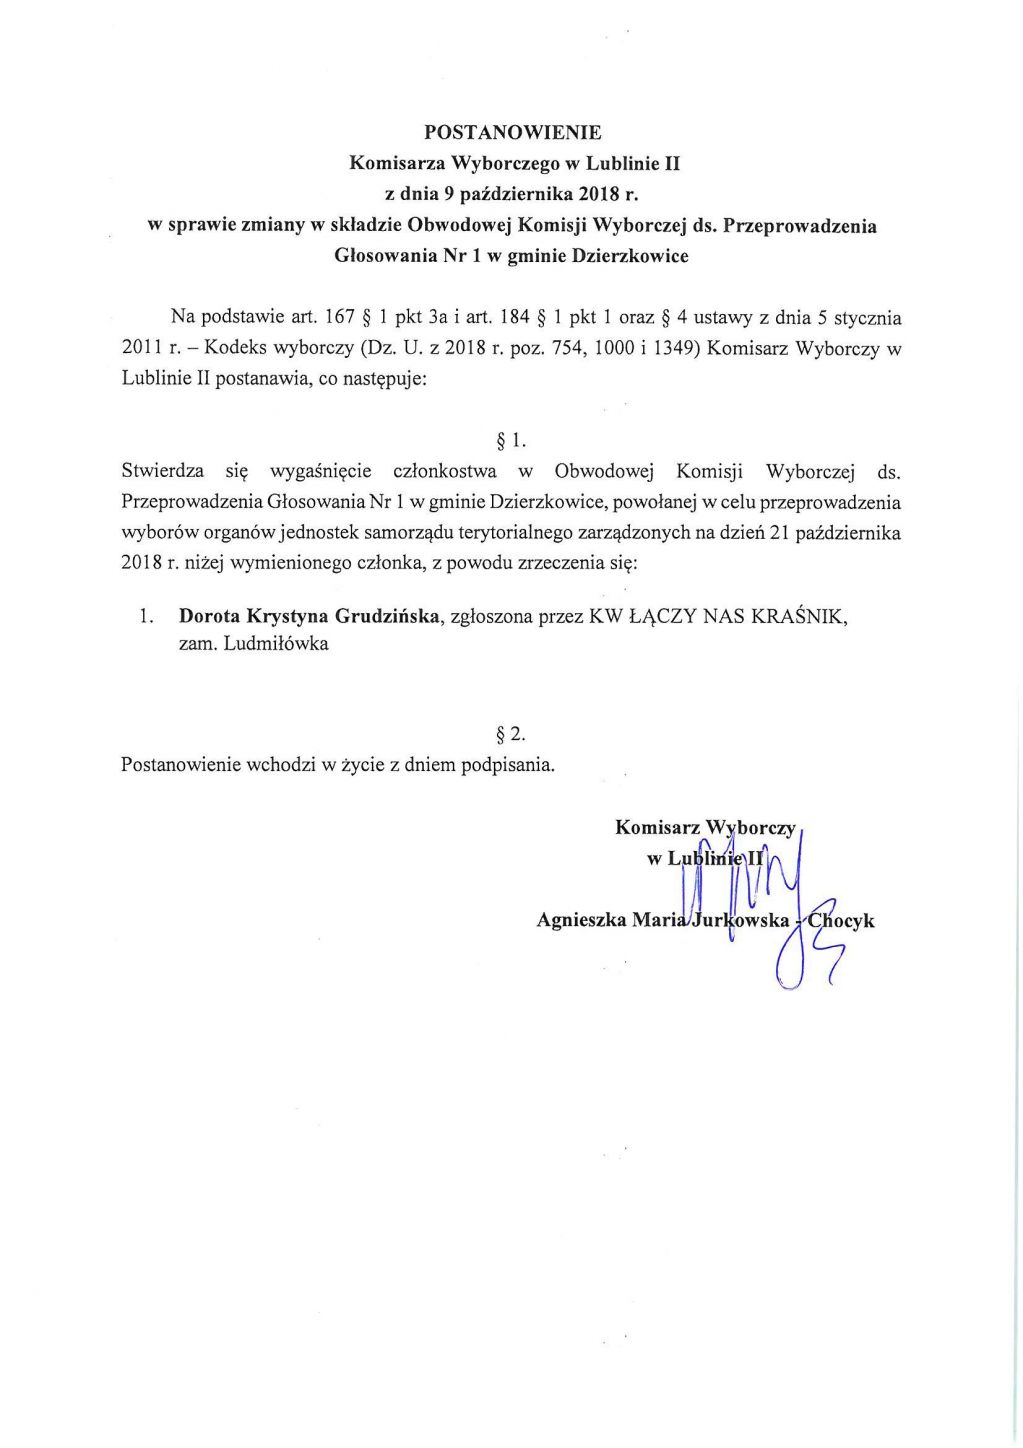 Postanowienie Komisarza Wyborczego w Lublinie II w sprawie zmiany w składzie  OKW ds. przeprowadzenia głosowania Nr 1 w gminie Dzierzkowice.